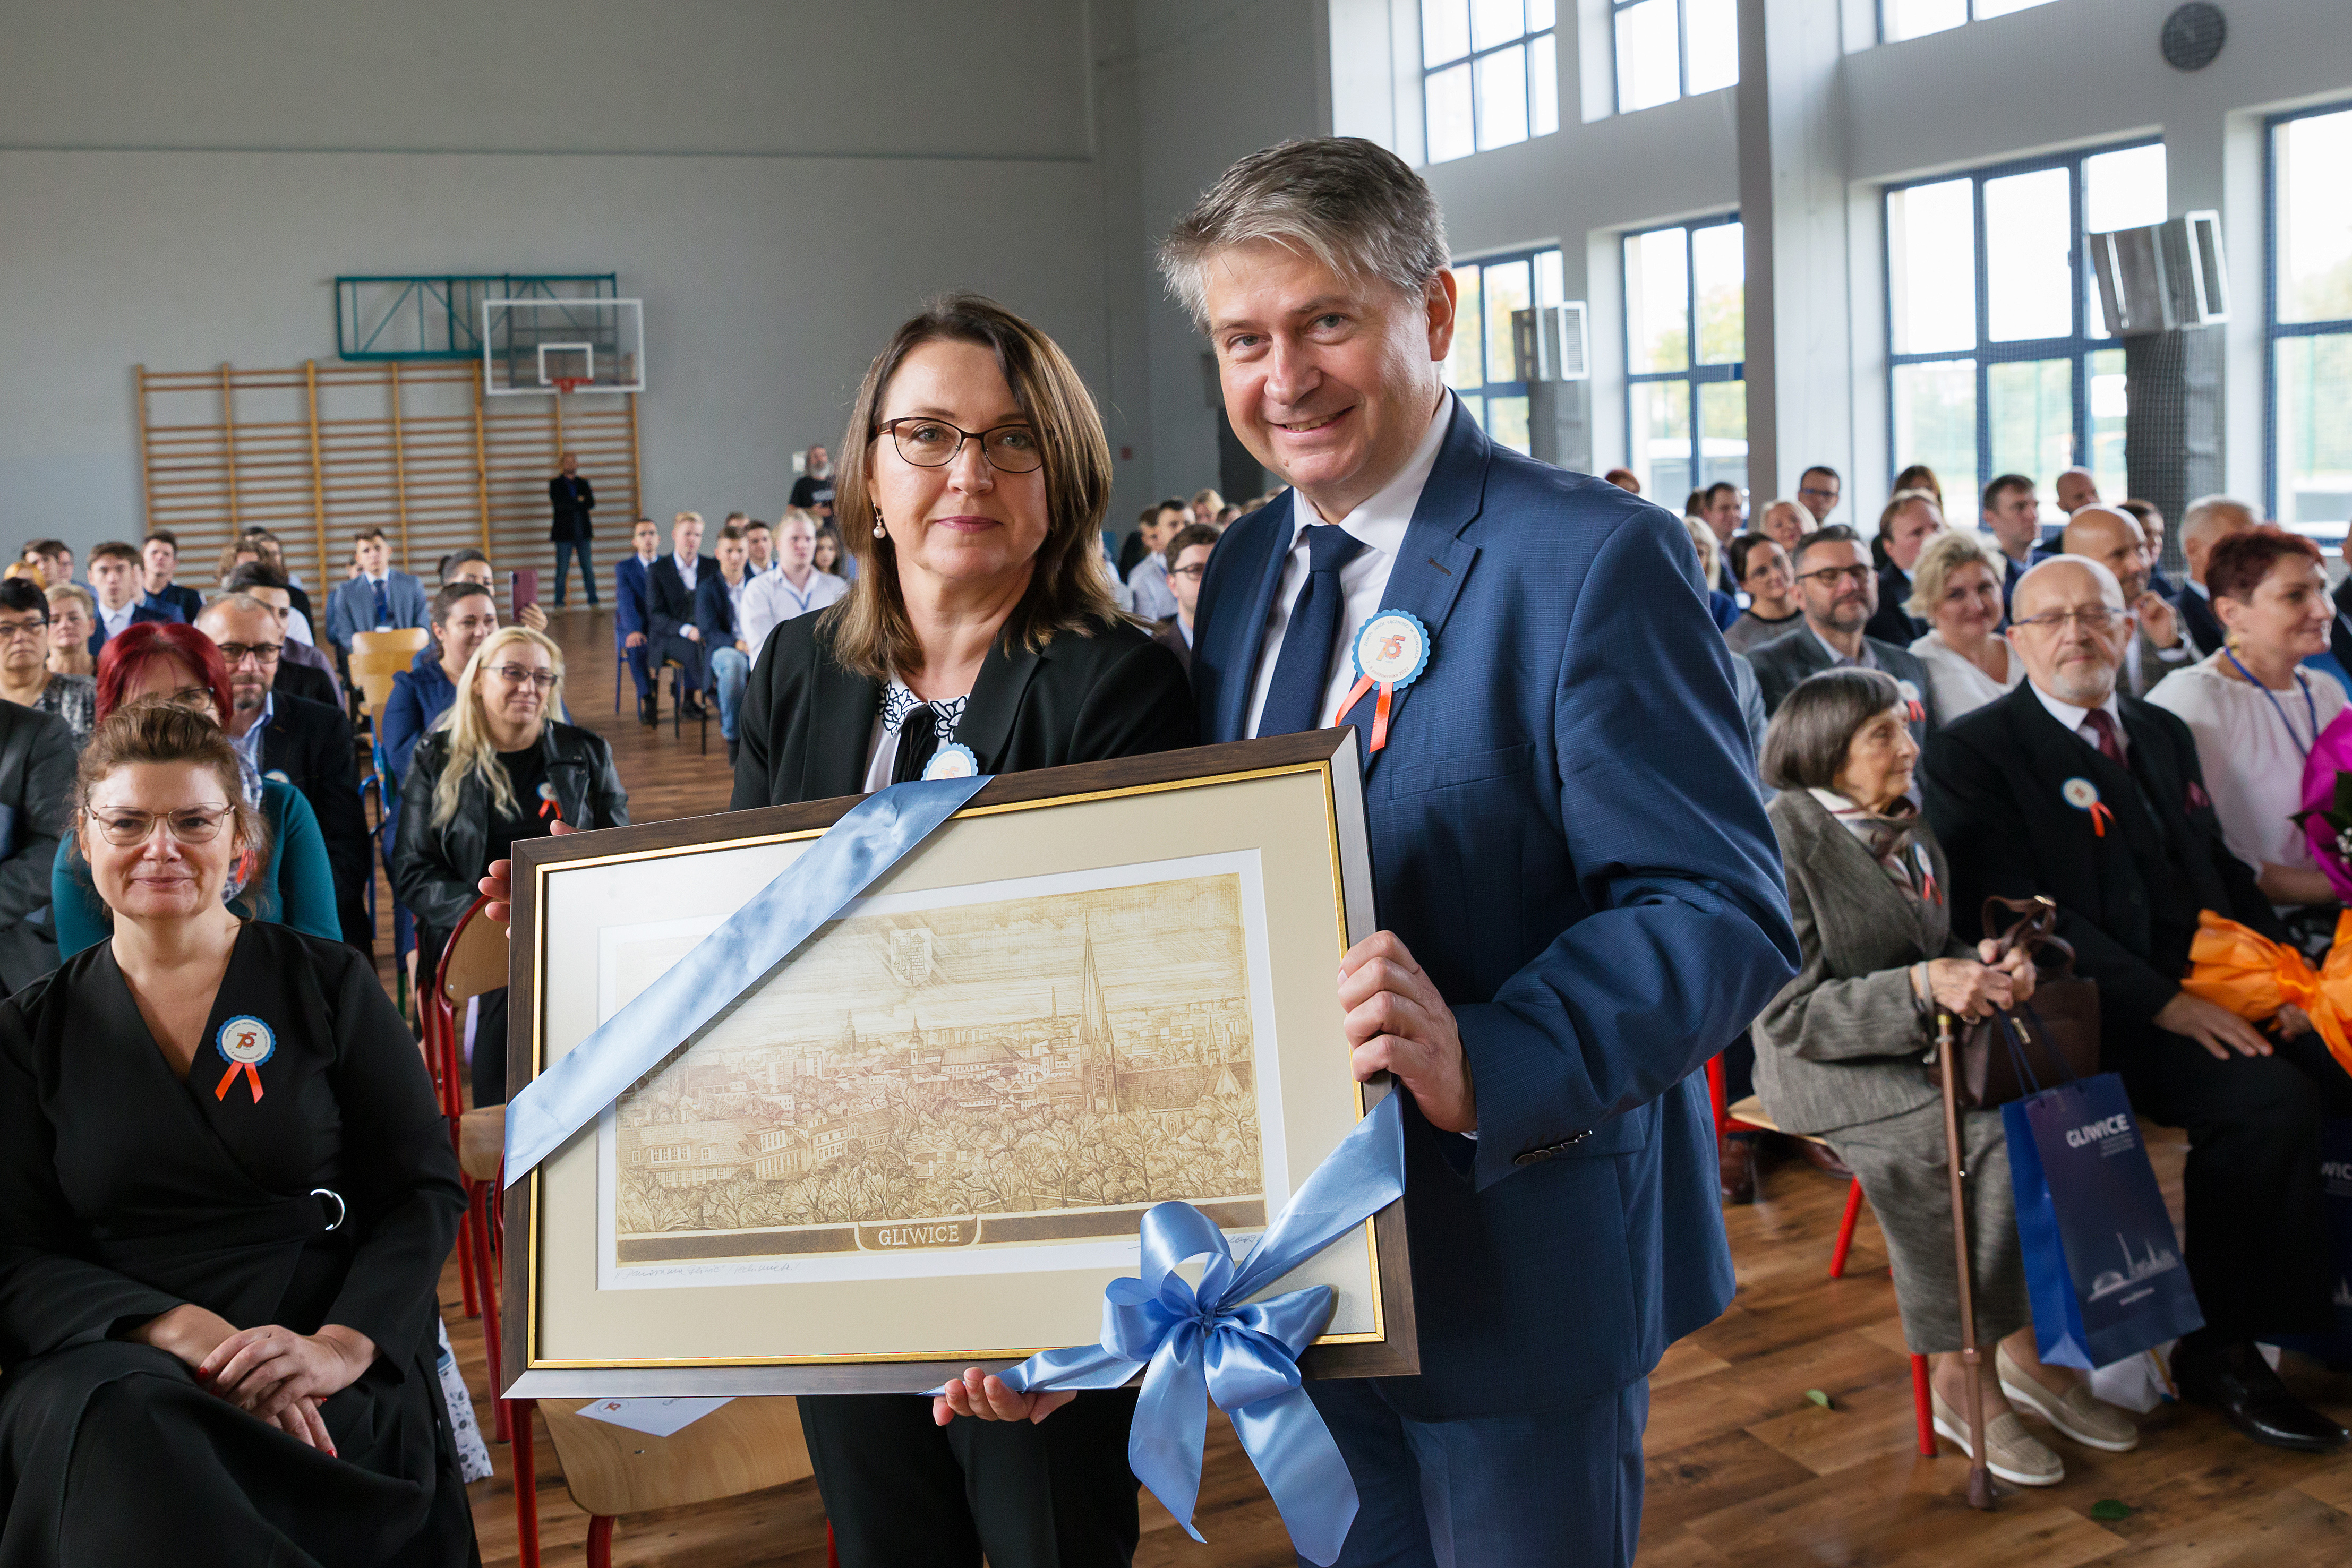 Przewodniczący Rady Miasta Marek Pszonak wręcza dyrektor szkoły zdjęcie Gliwic